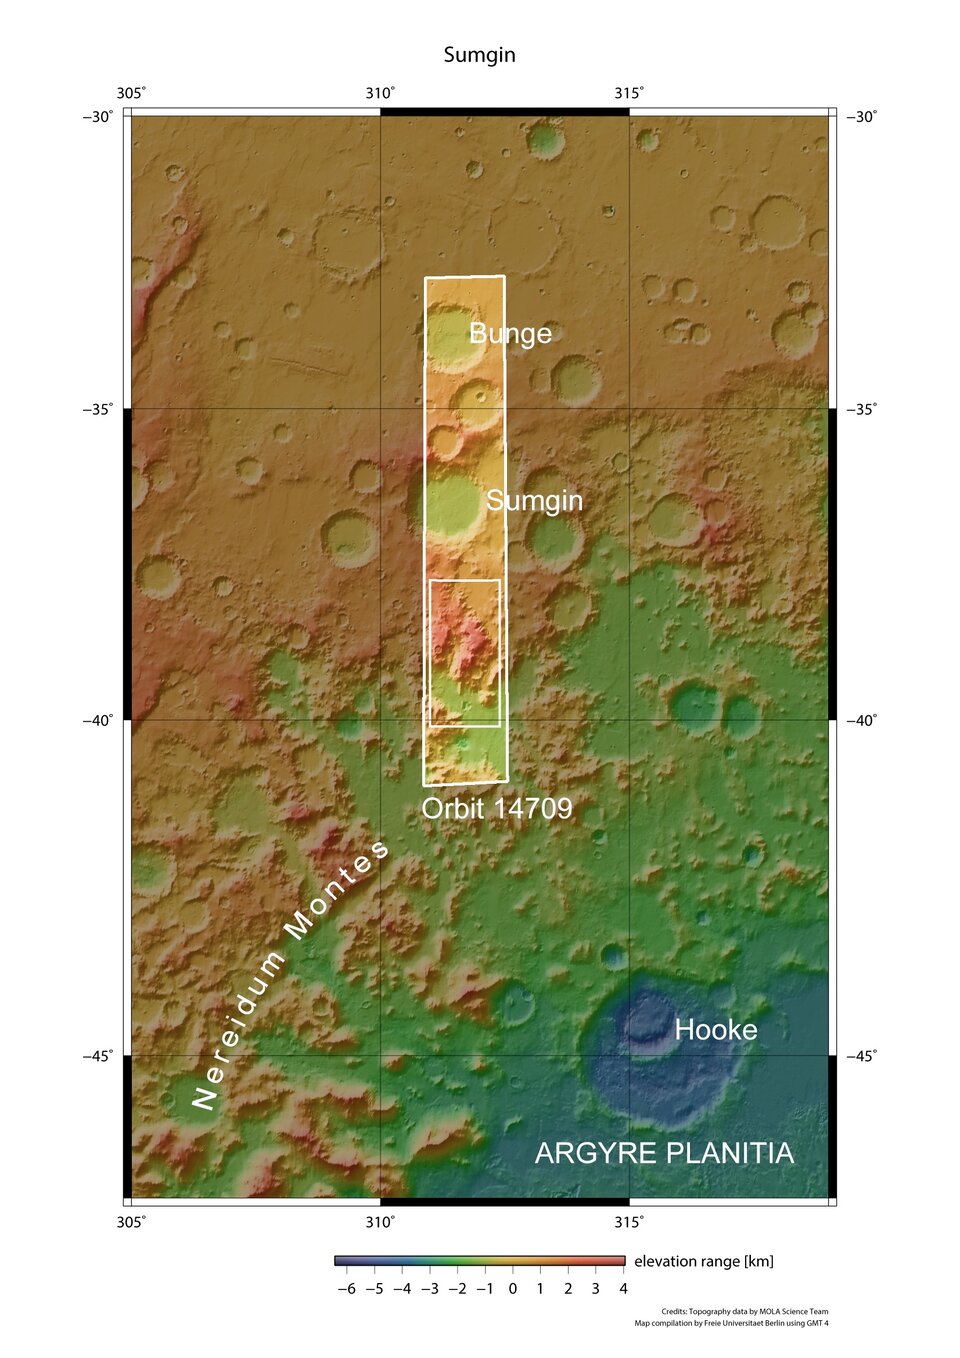 Imagen de referencia de la cuenca de impacto Argyre de Marte 